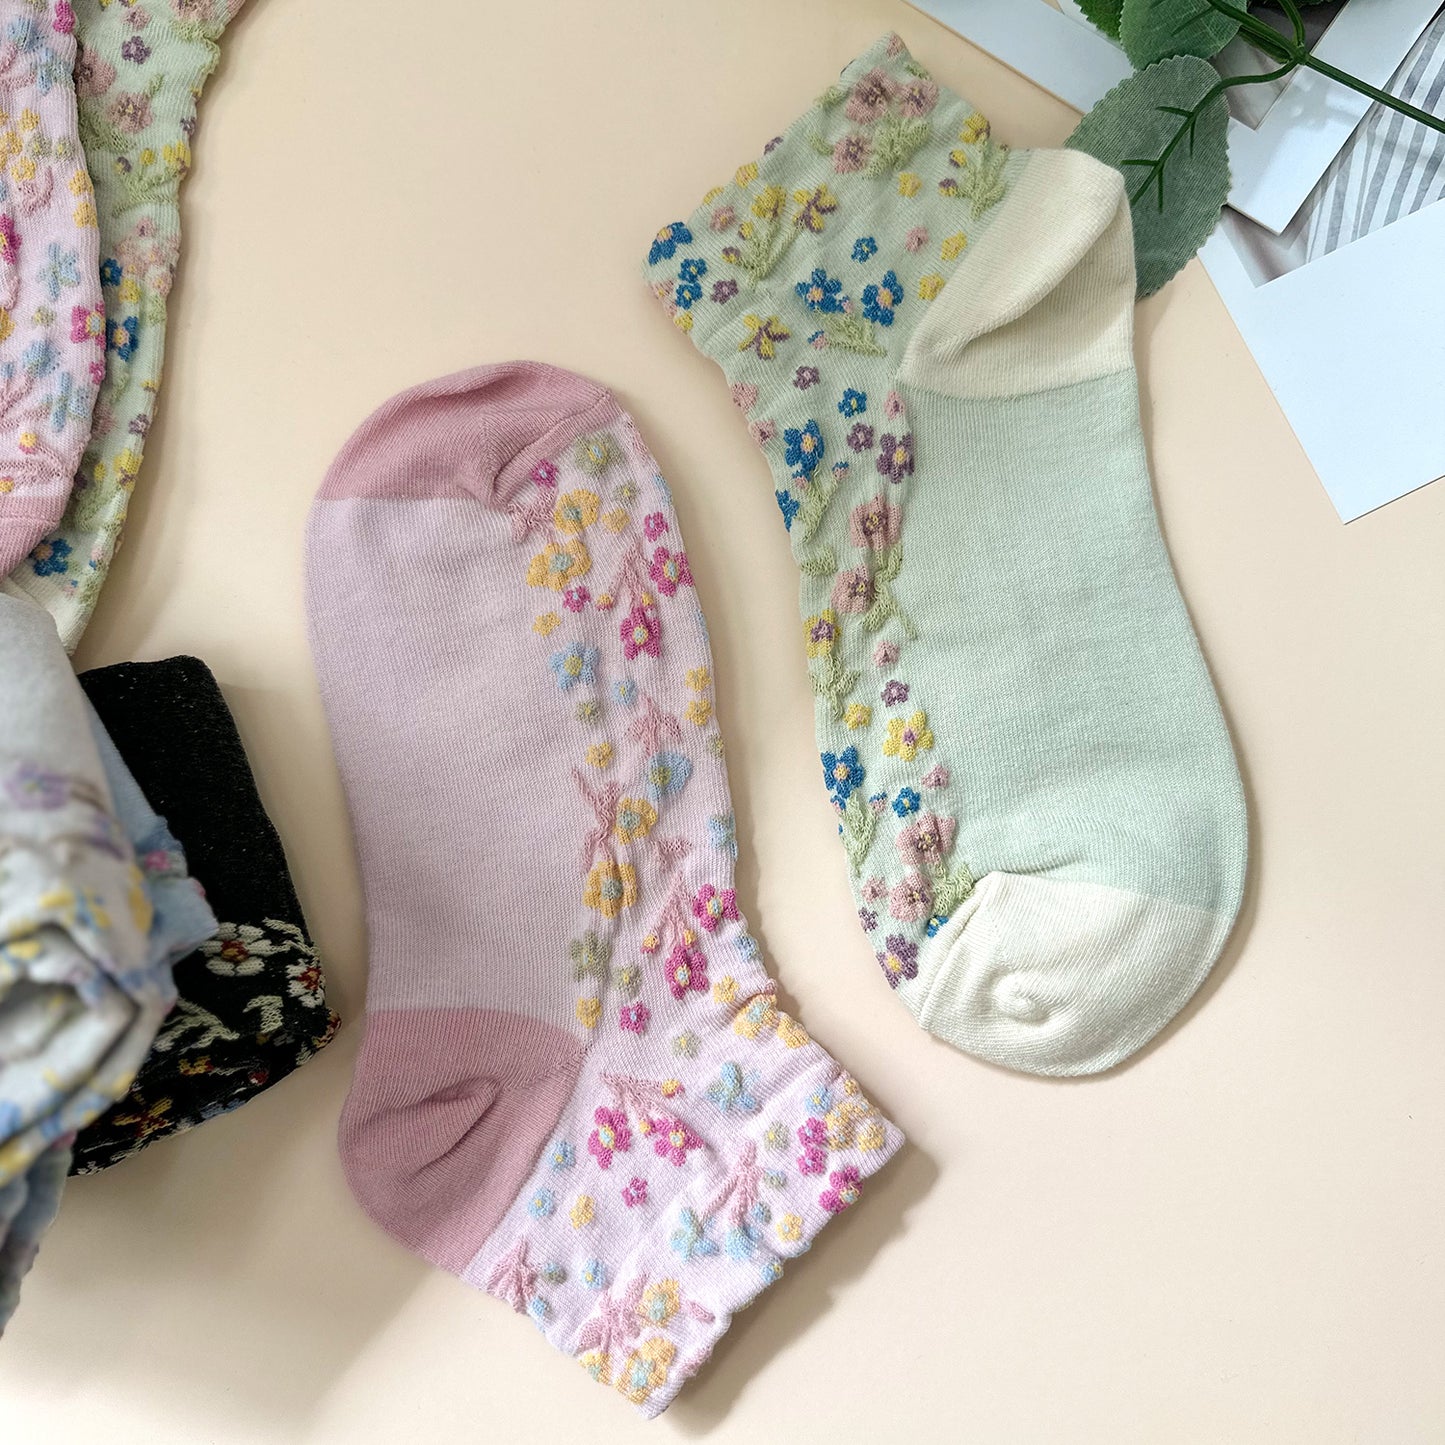 Women's Ankle Harga Garden Flower Socks